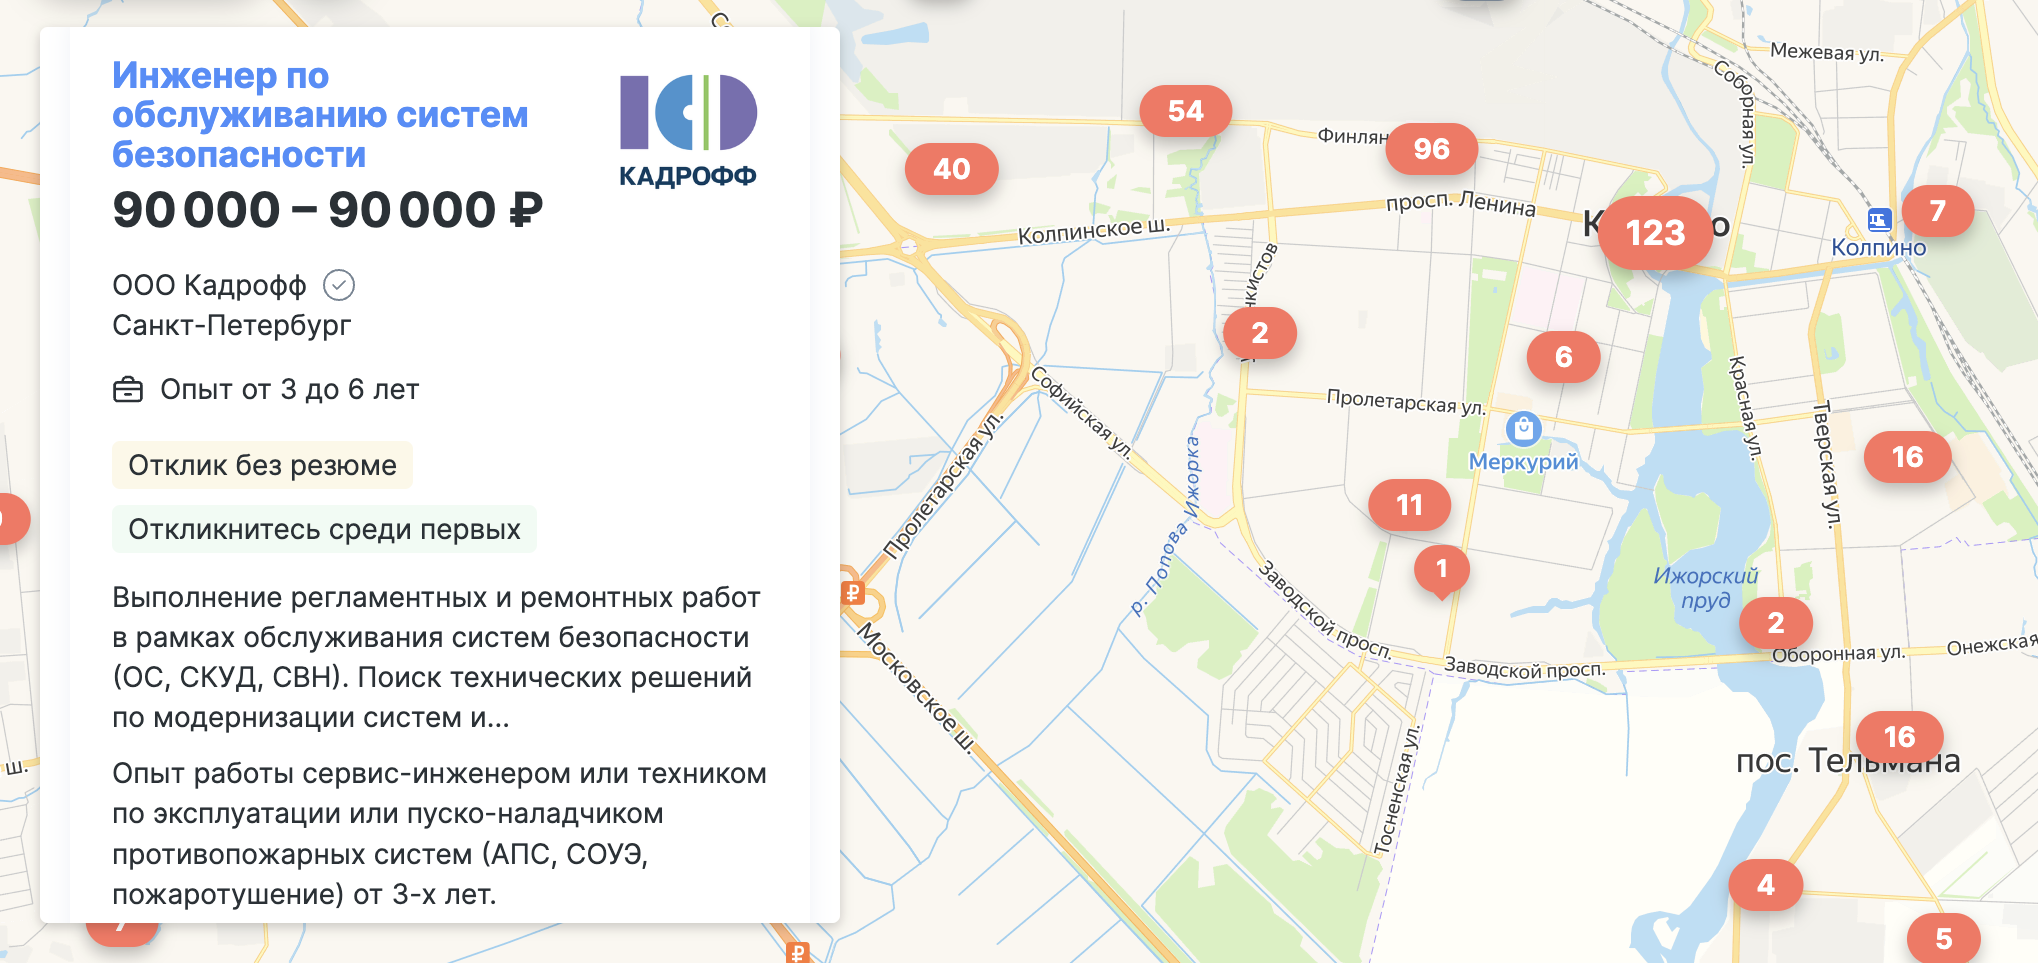 Большинство вакансий сосредоточено на предприятиях Колпина. Источник: spb.hh.ru